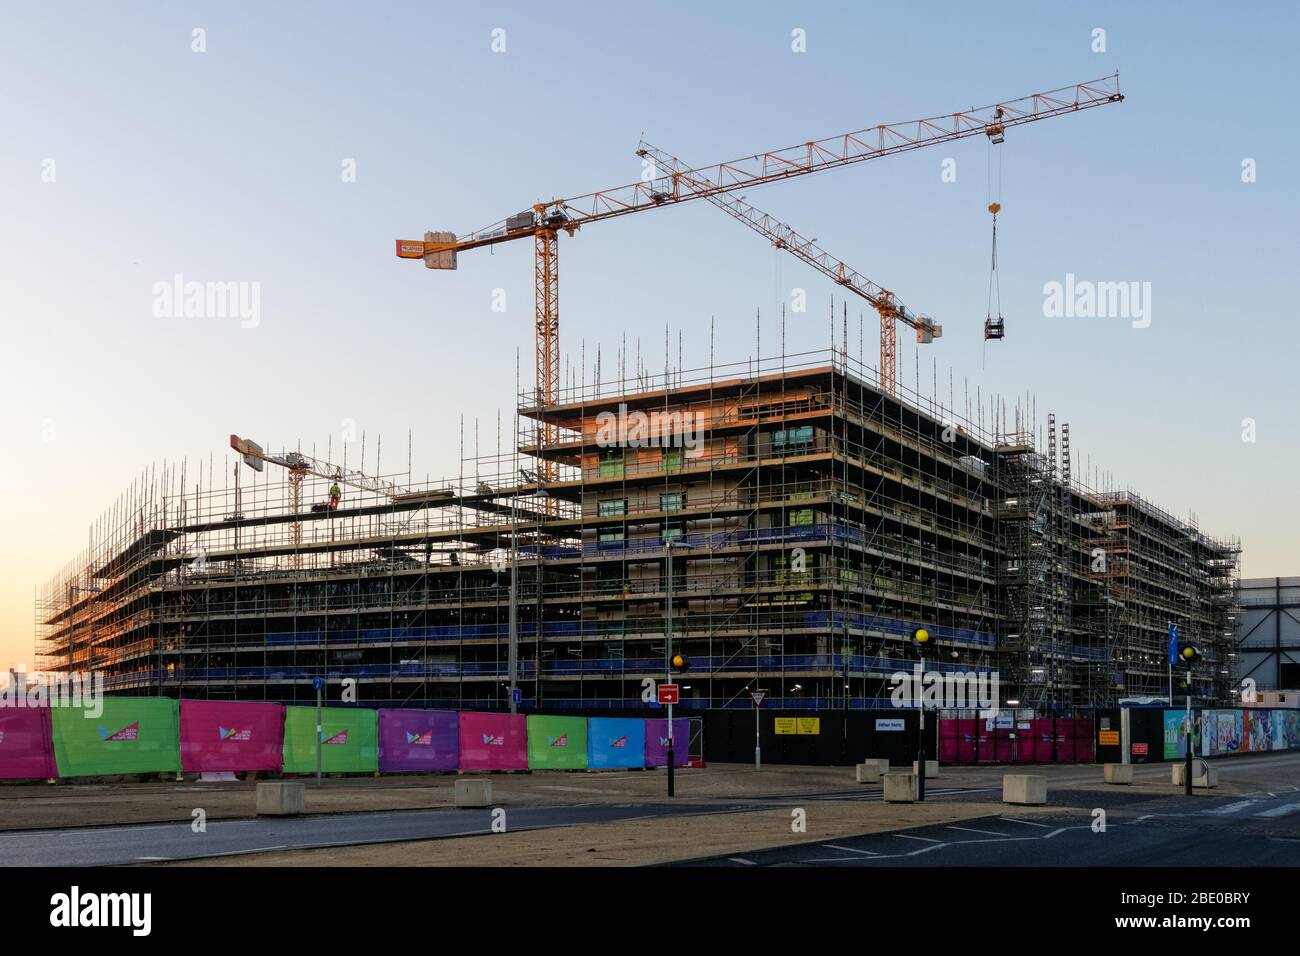 Site de Construction de bâtiment résidentiel à Stratford, Londres Angleterre Royaume-Uni UK Banque D'Images